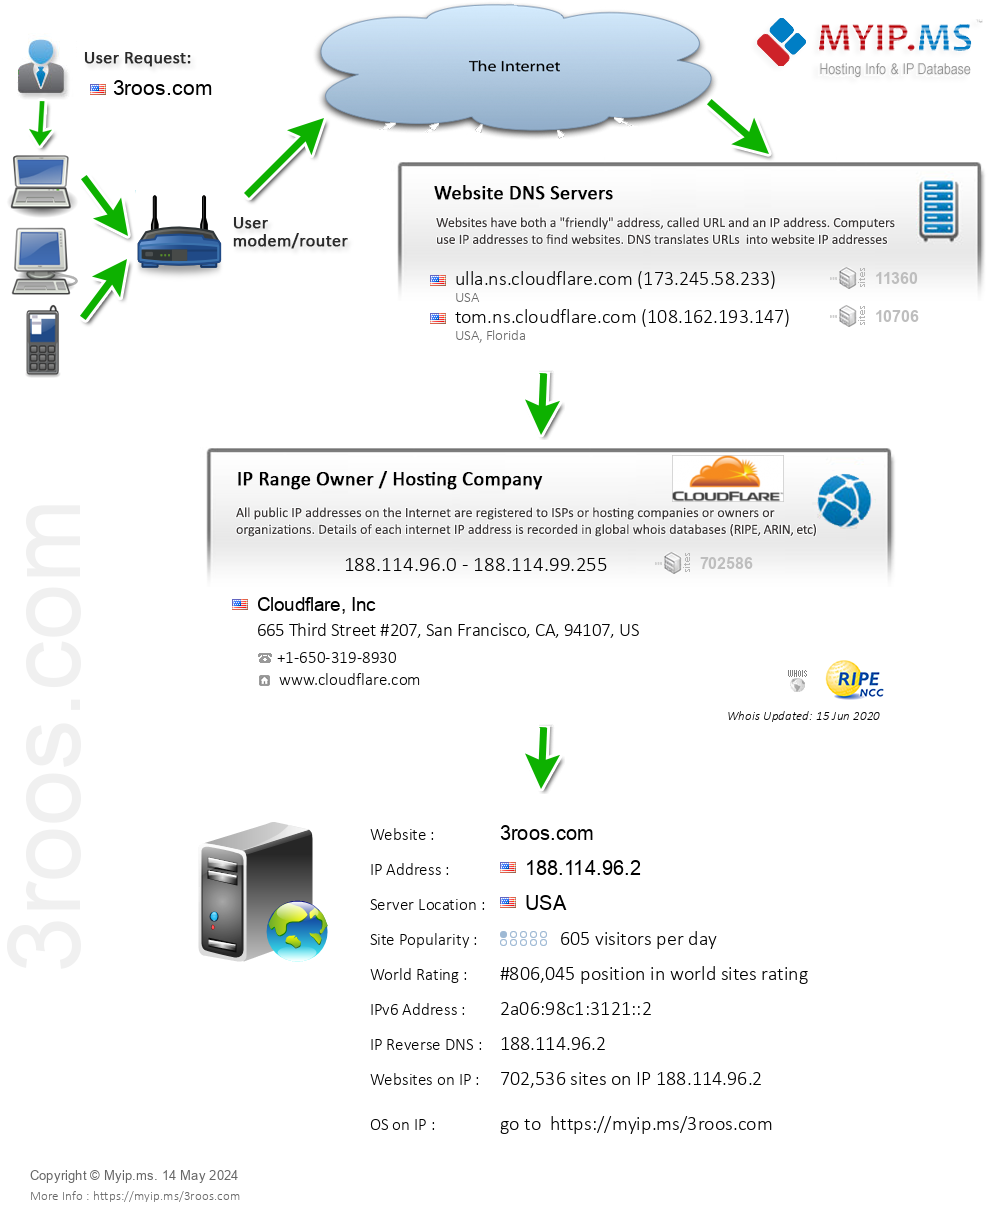 3roos.com - Website Hosting Visual IP Diagram